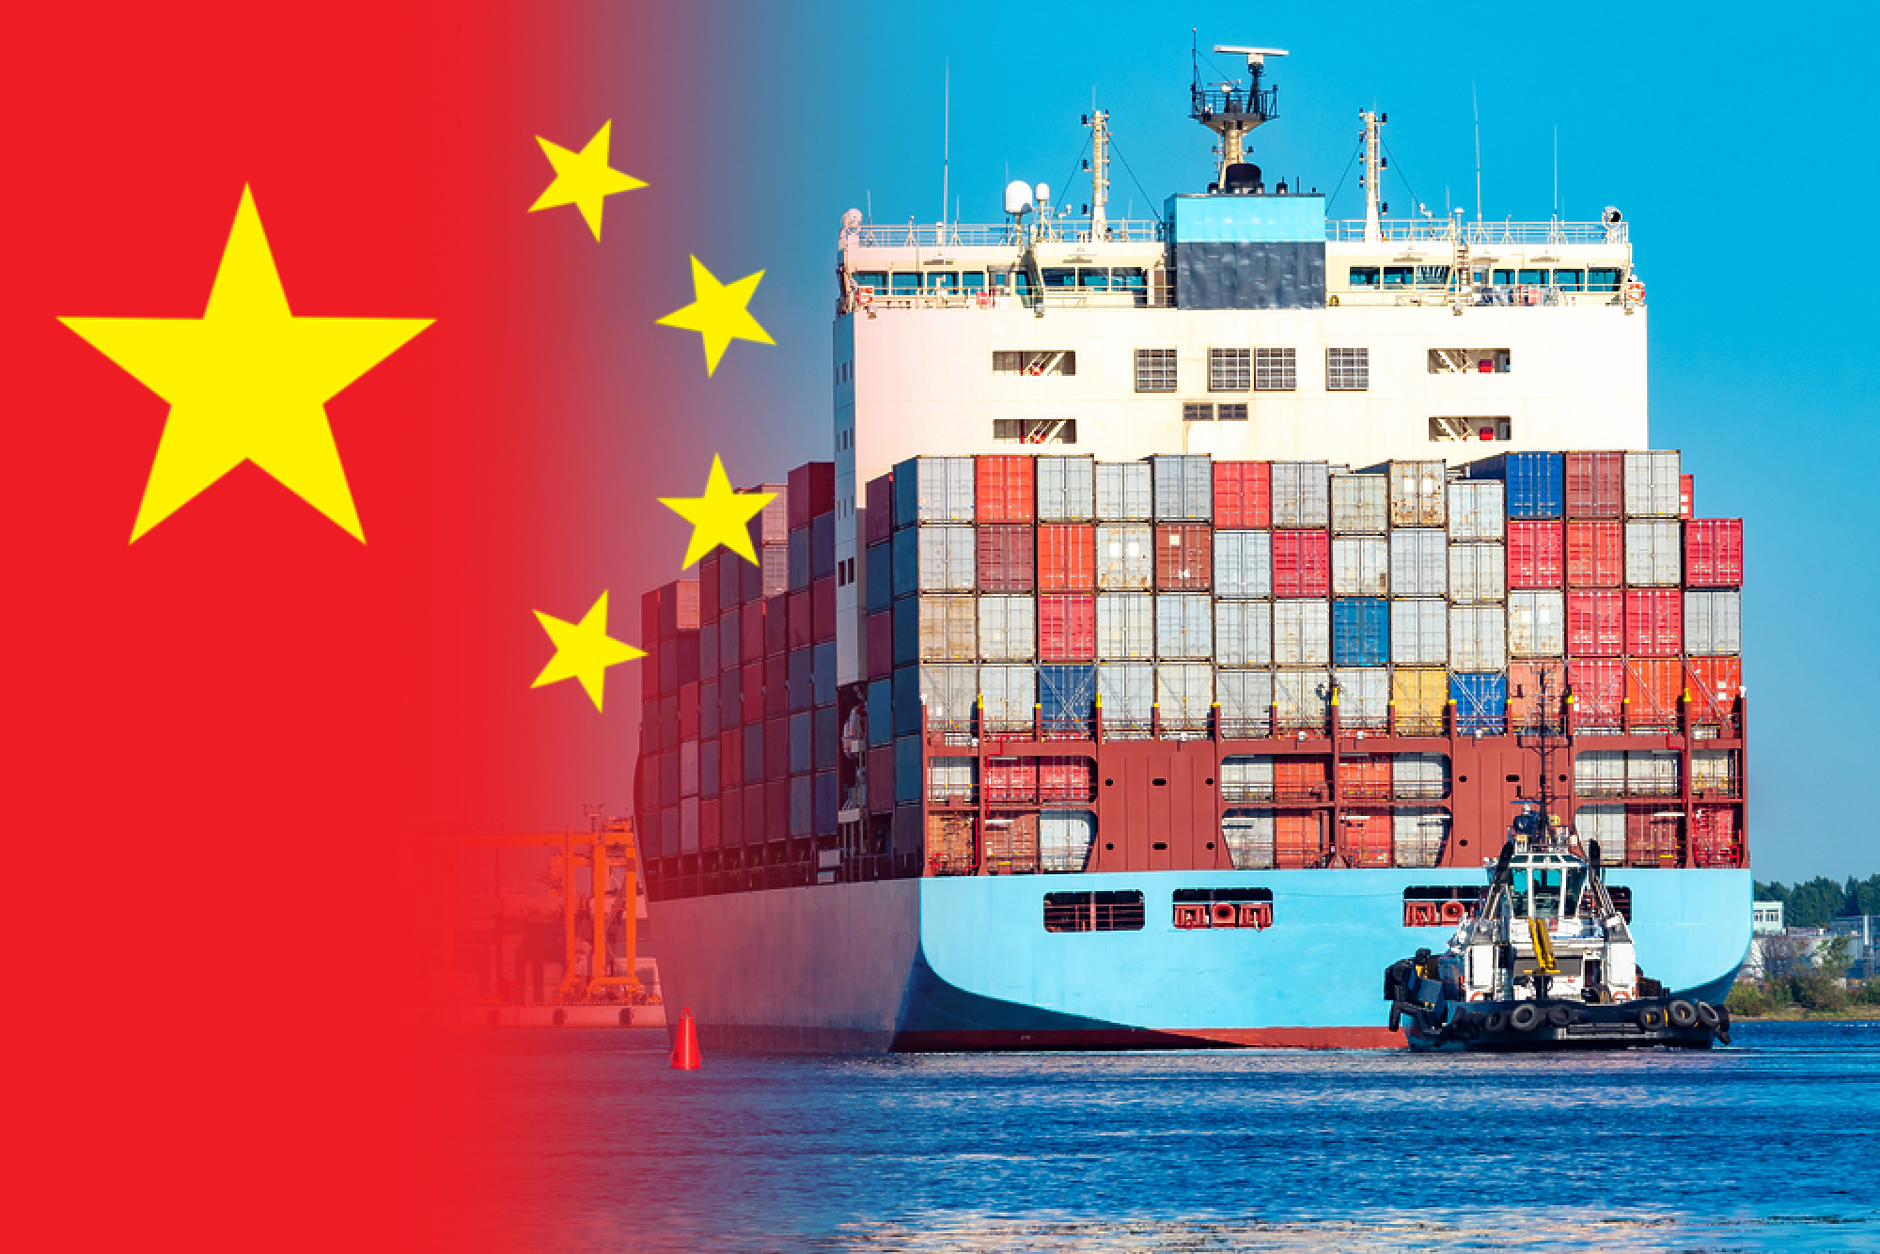 Вносът на Китай е скочил с 8,4% през април заради ръст на покупките от САЩ 